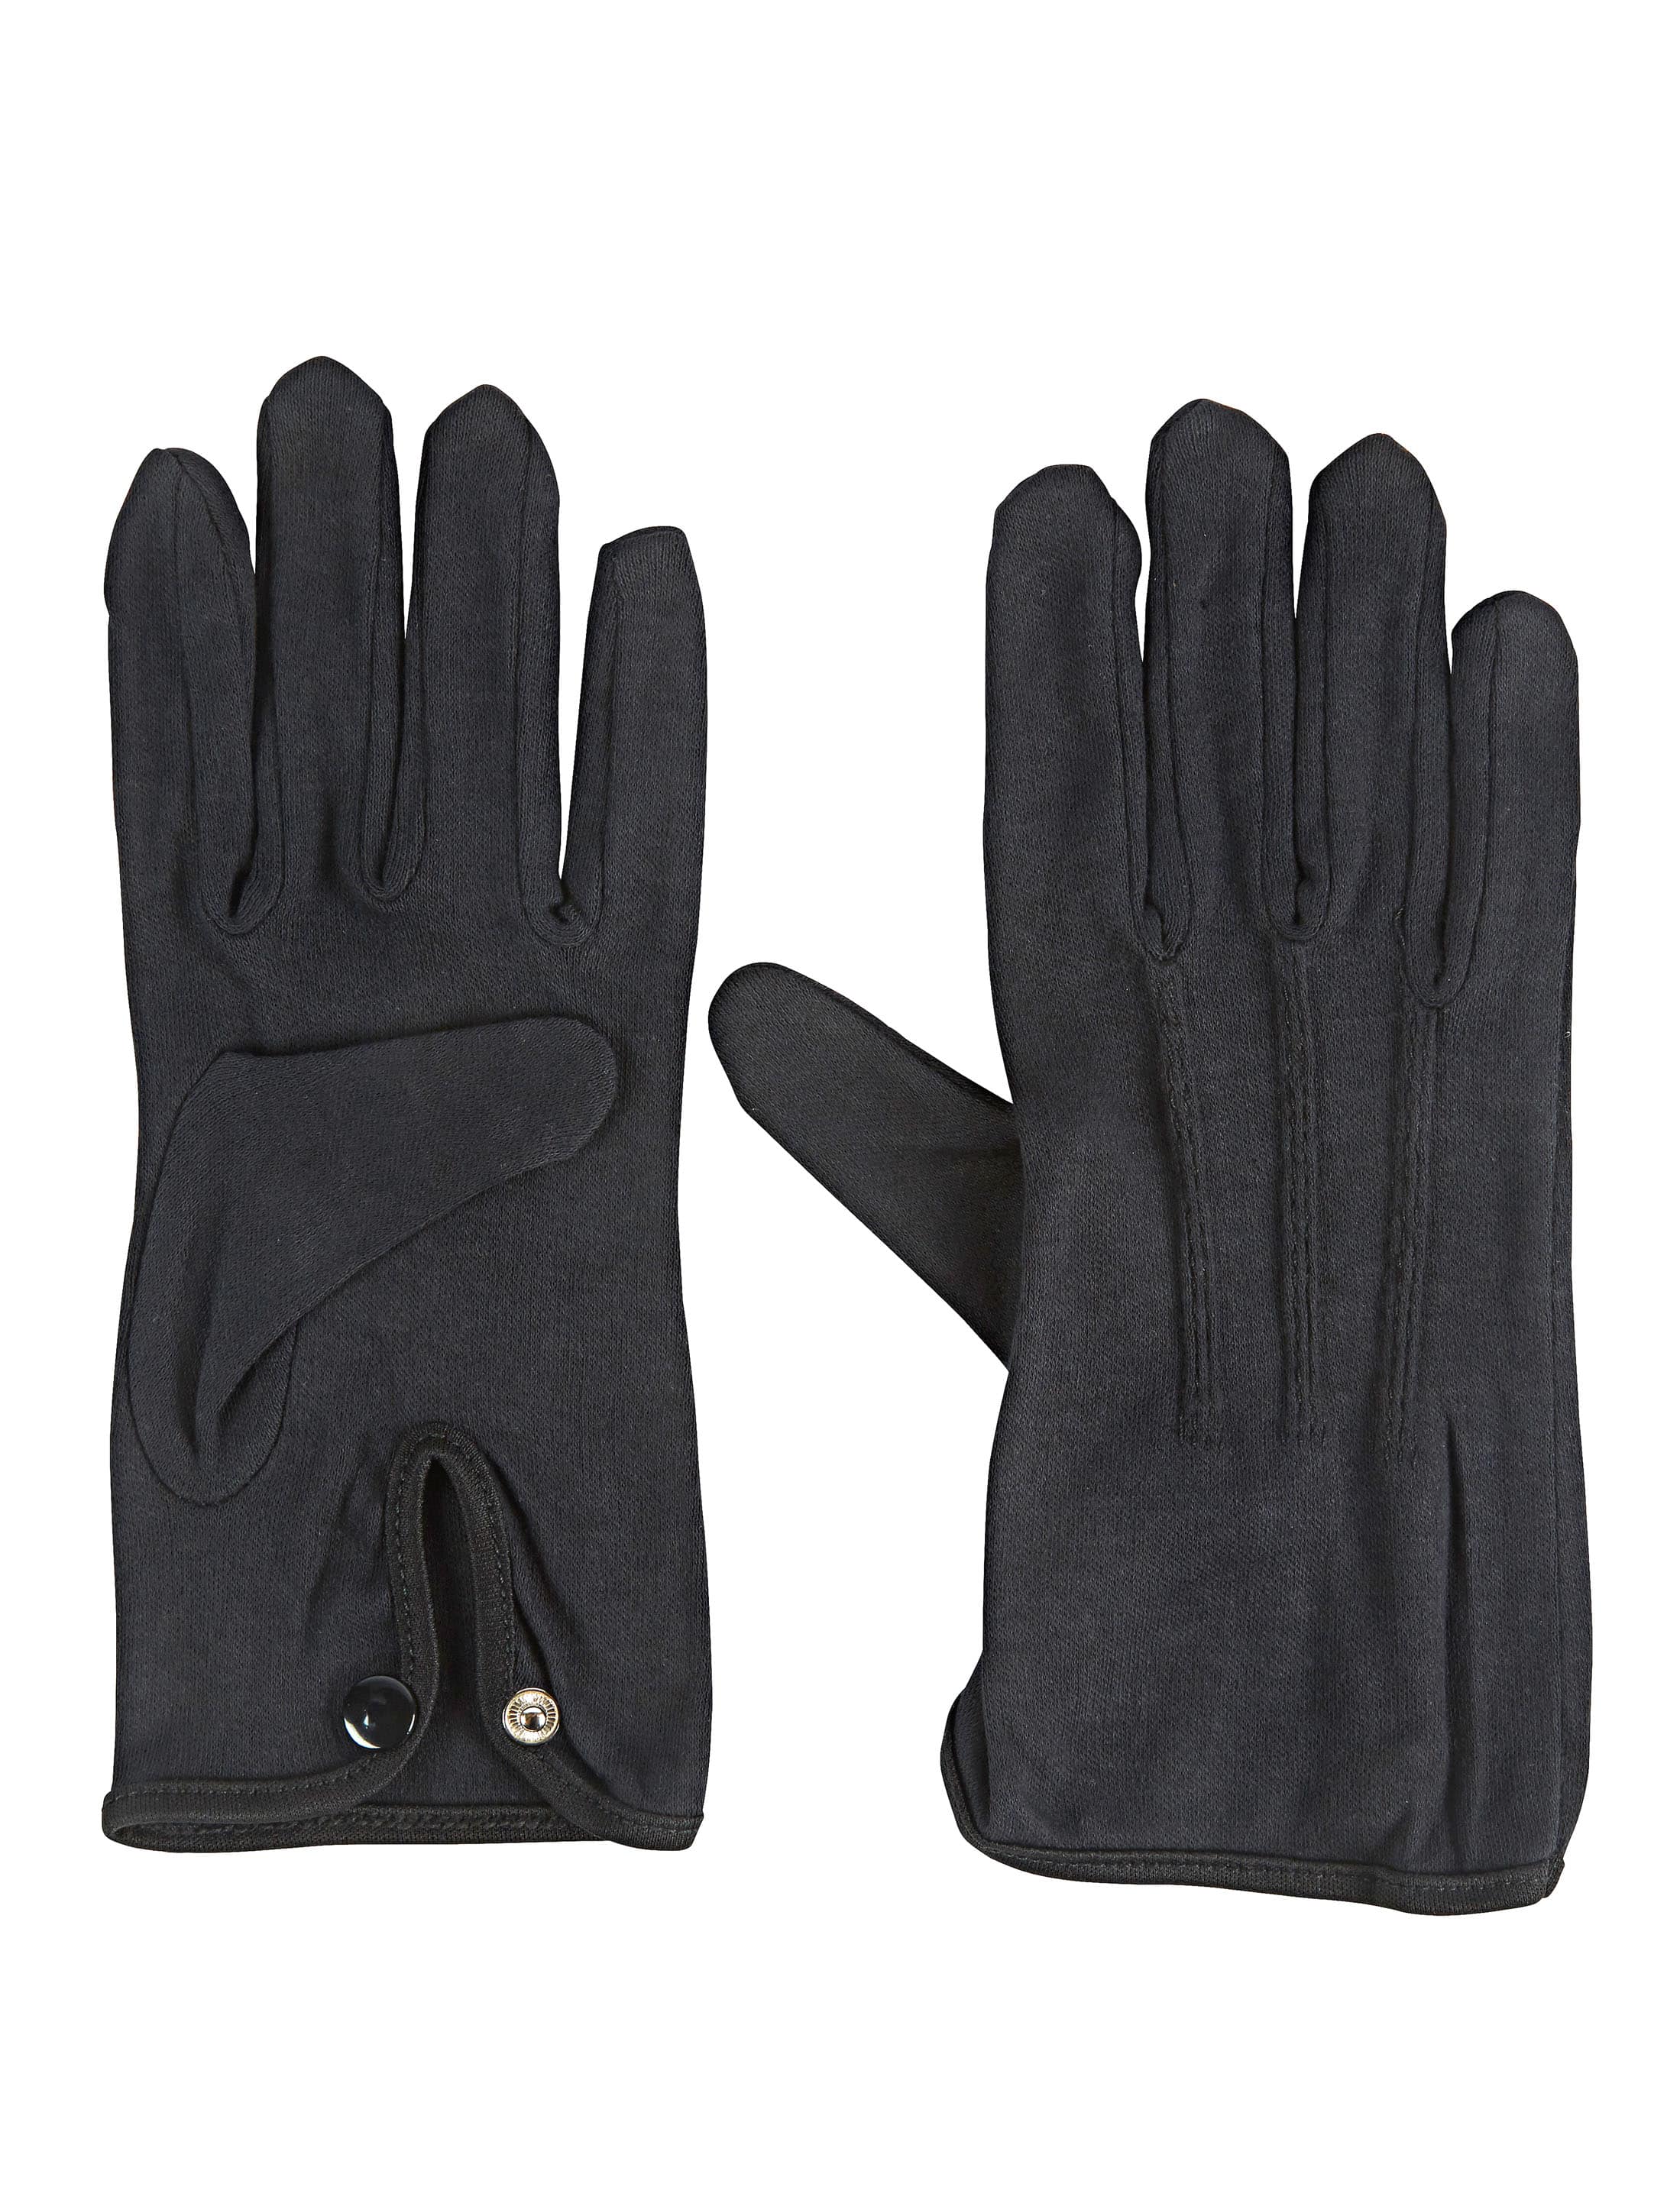 Handschuhe Baumwolle mit Knopf schwarz M